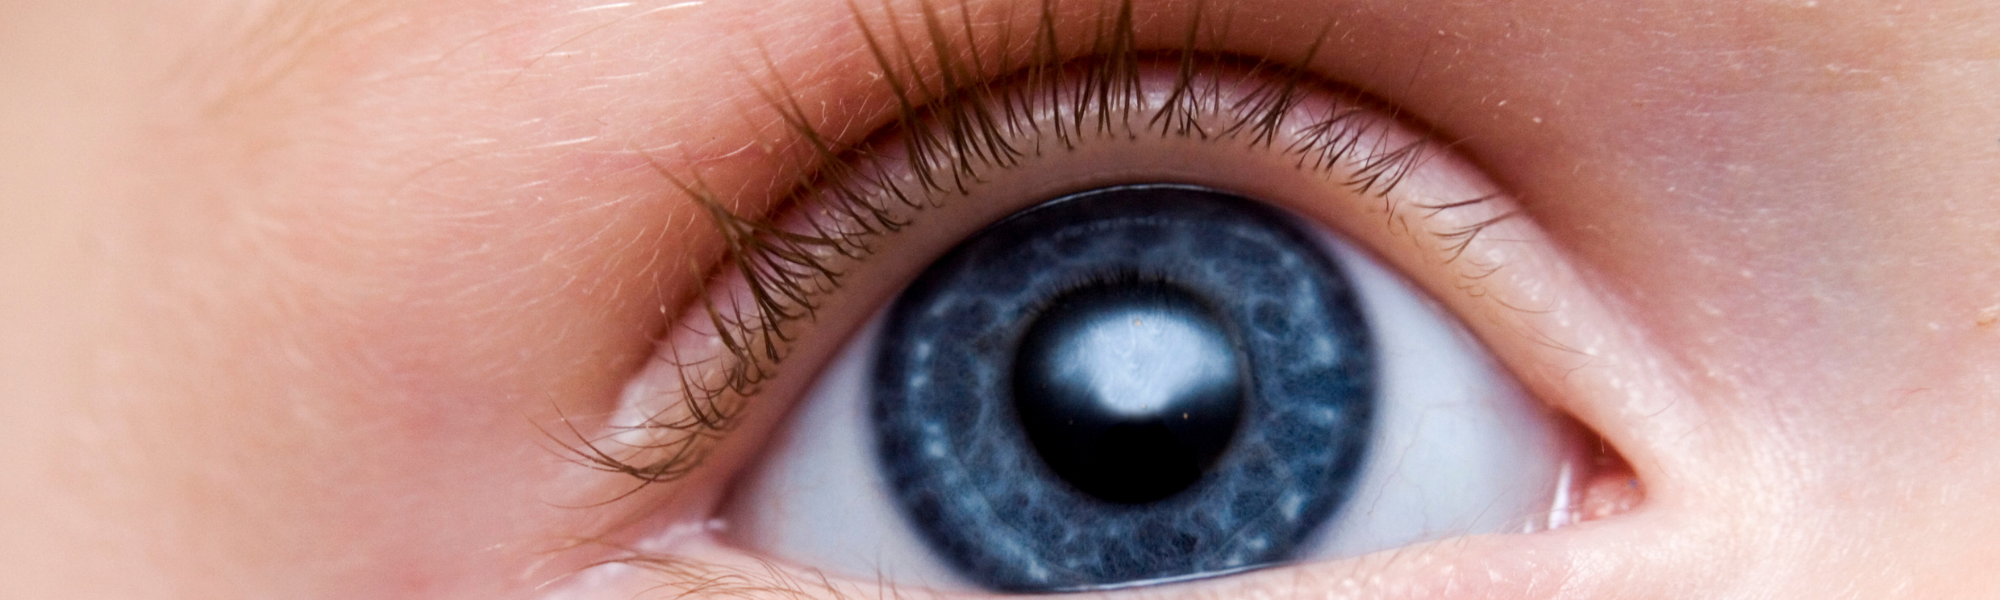 O que é retinoblastoma e como diagnosticar?